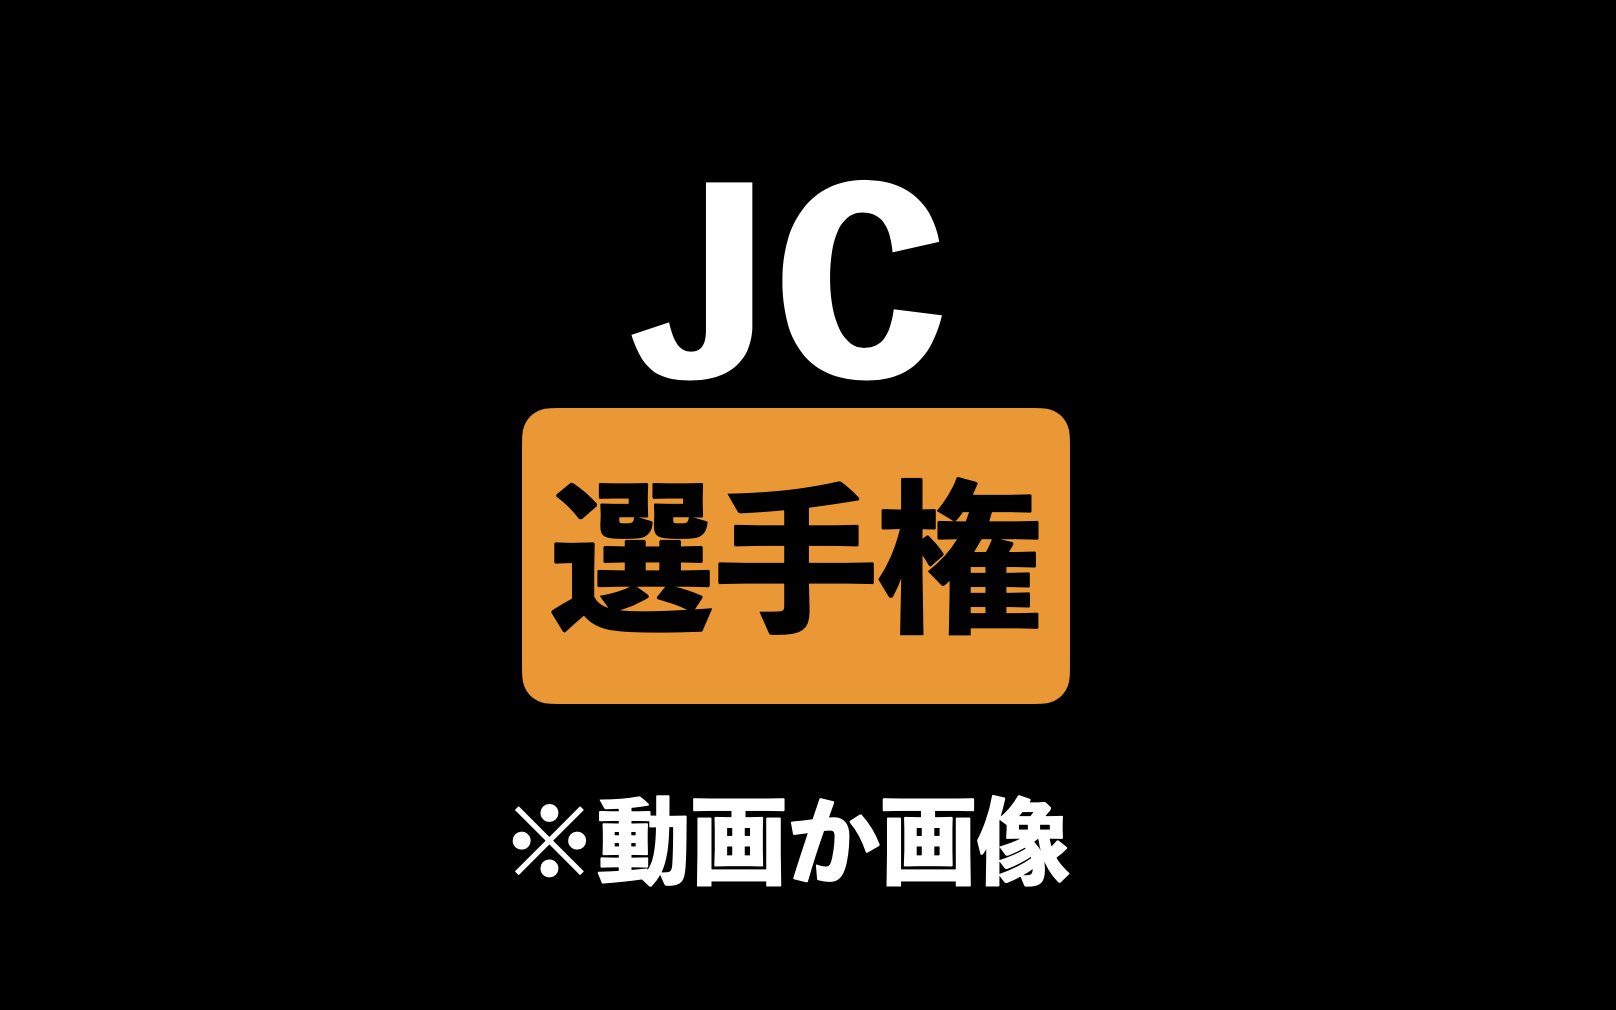 js　　jc　　無修正 落札相場検索 - オークファン